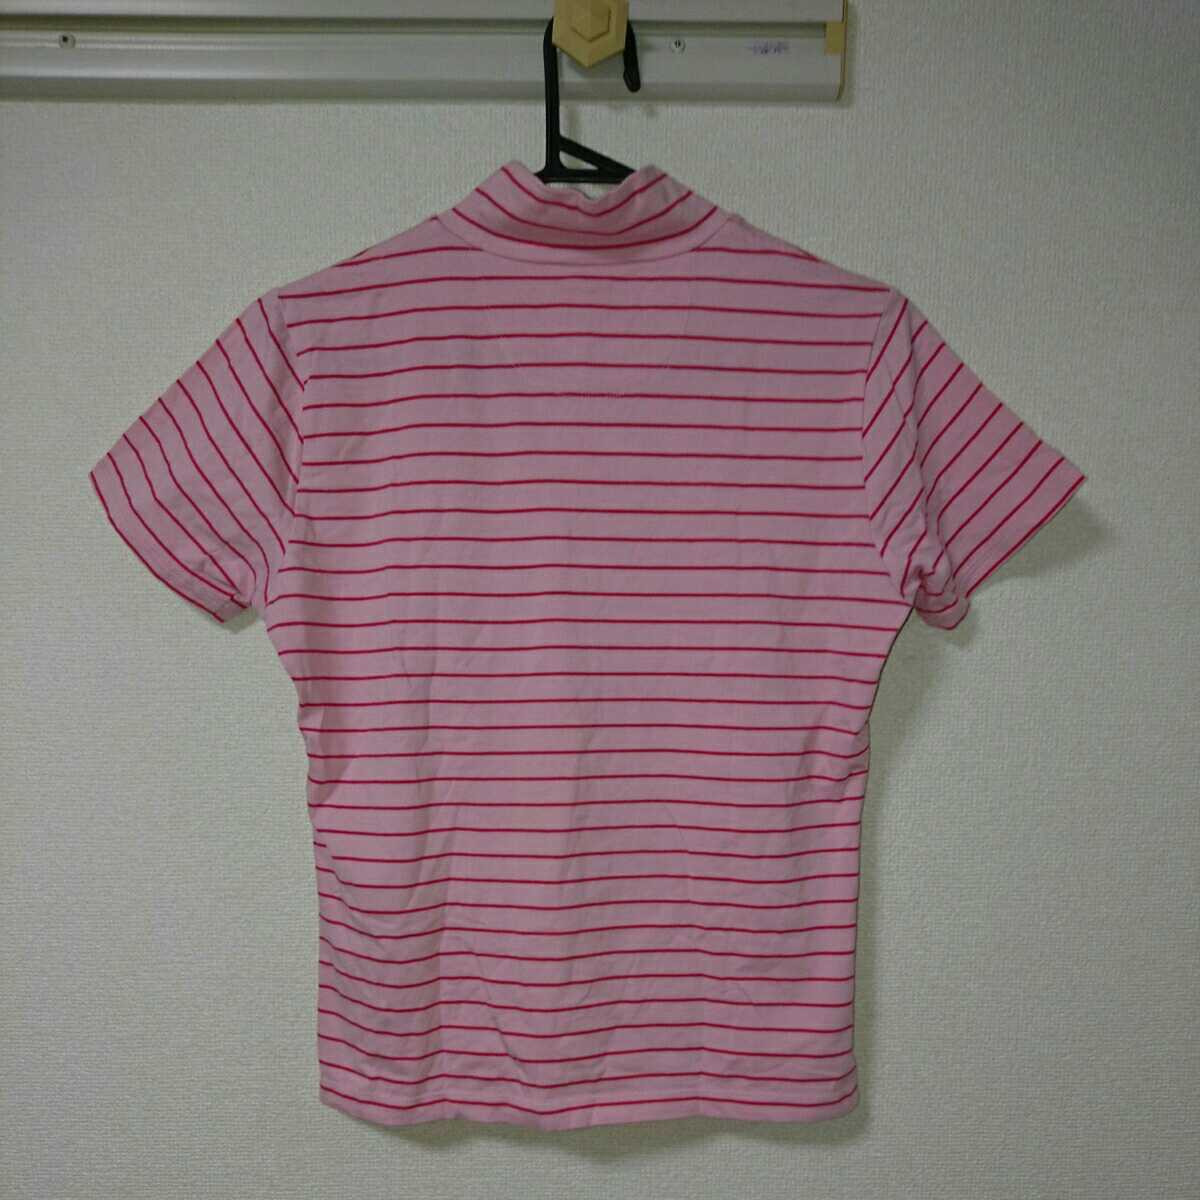 CUTTER & BUCK резчик and задний спорт Golf тренировка одежда tops рубашка короткий рукав футболка розовый красный окантовка размер M